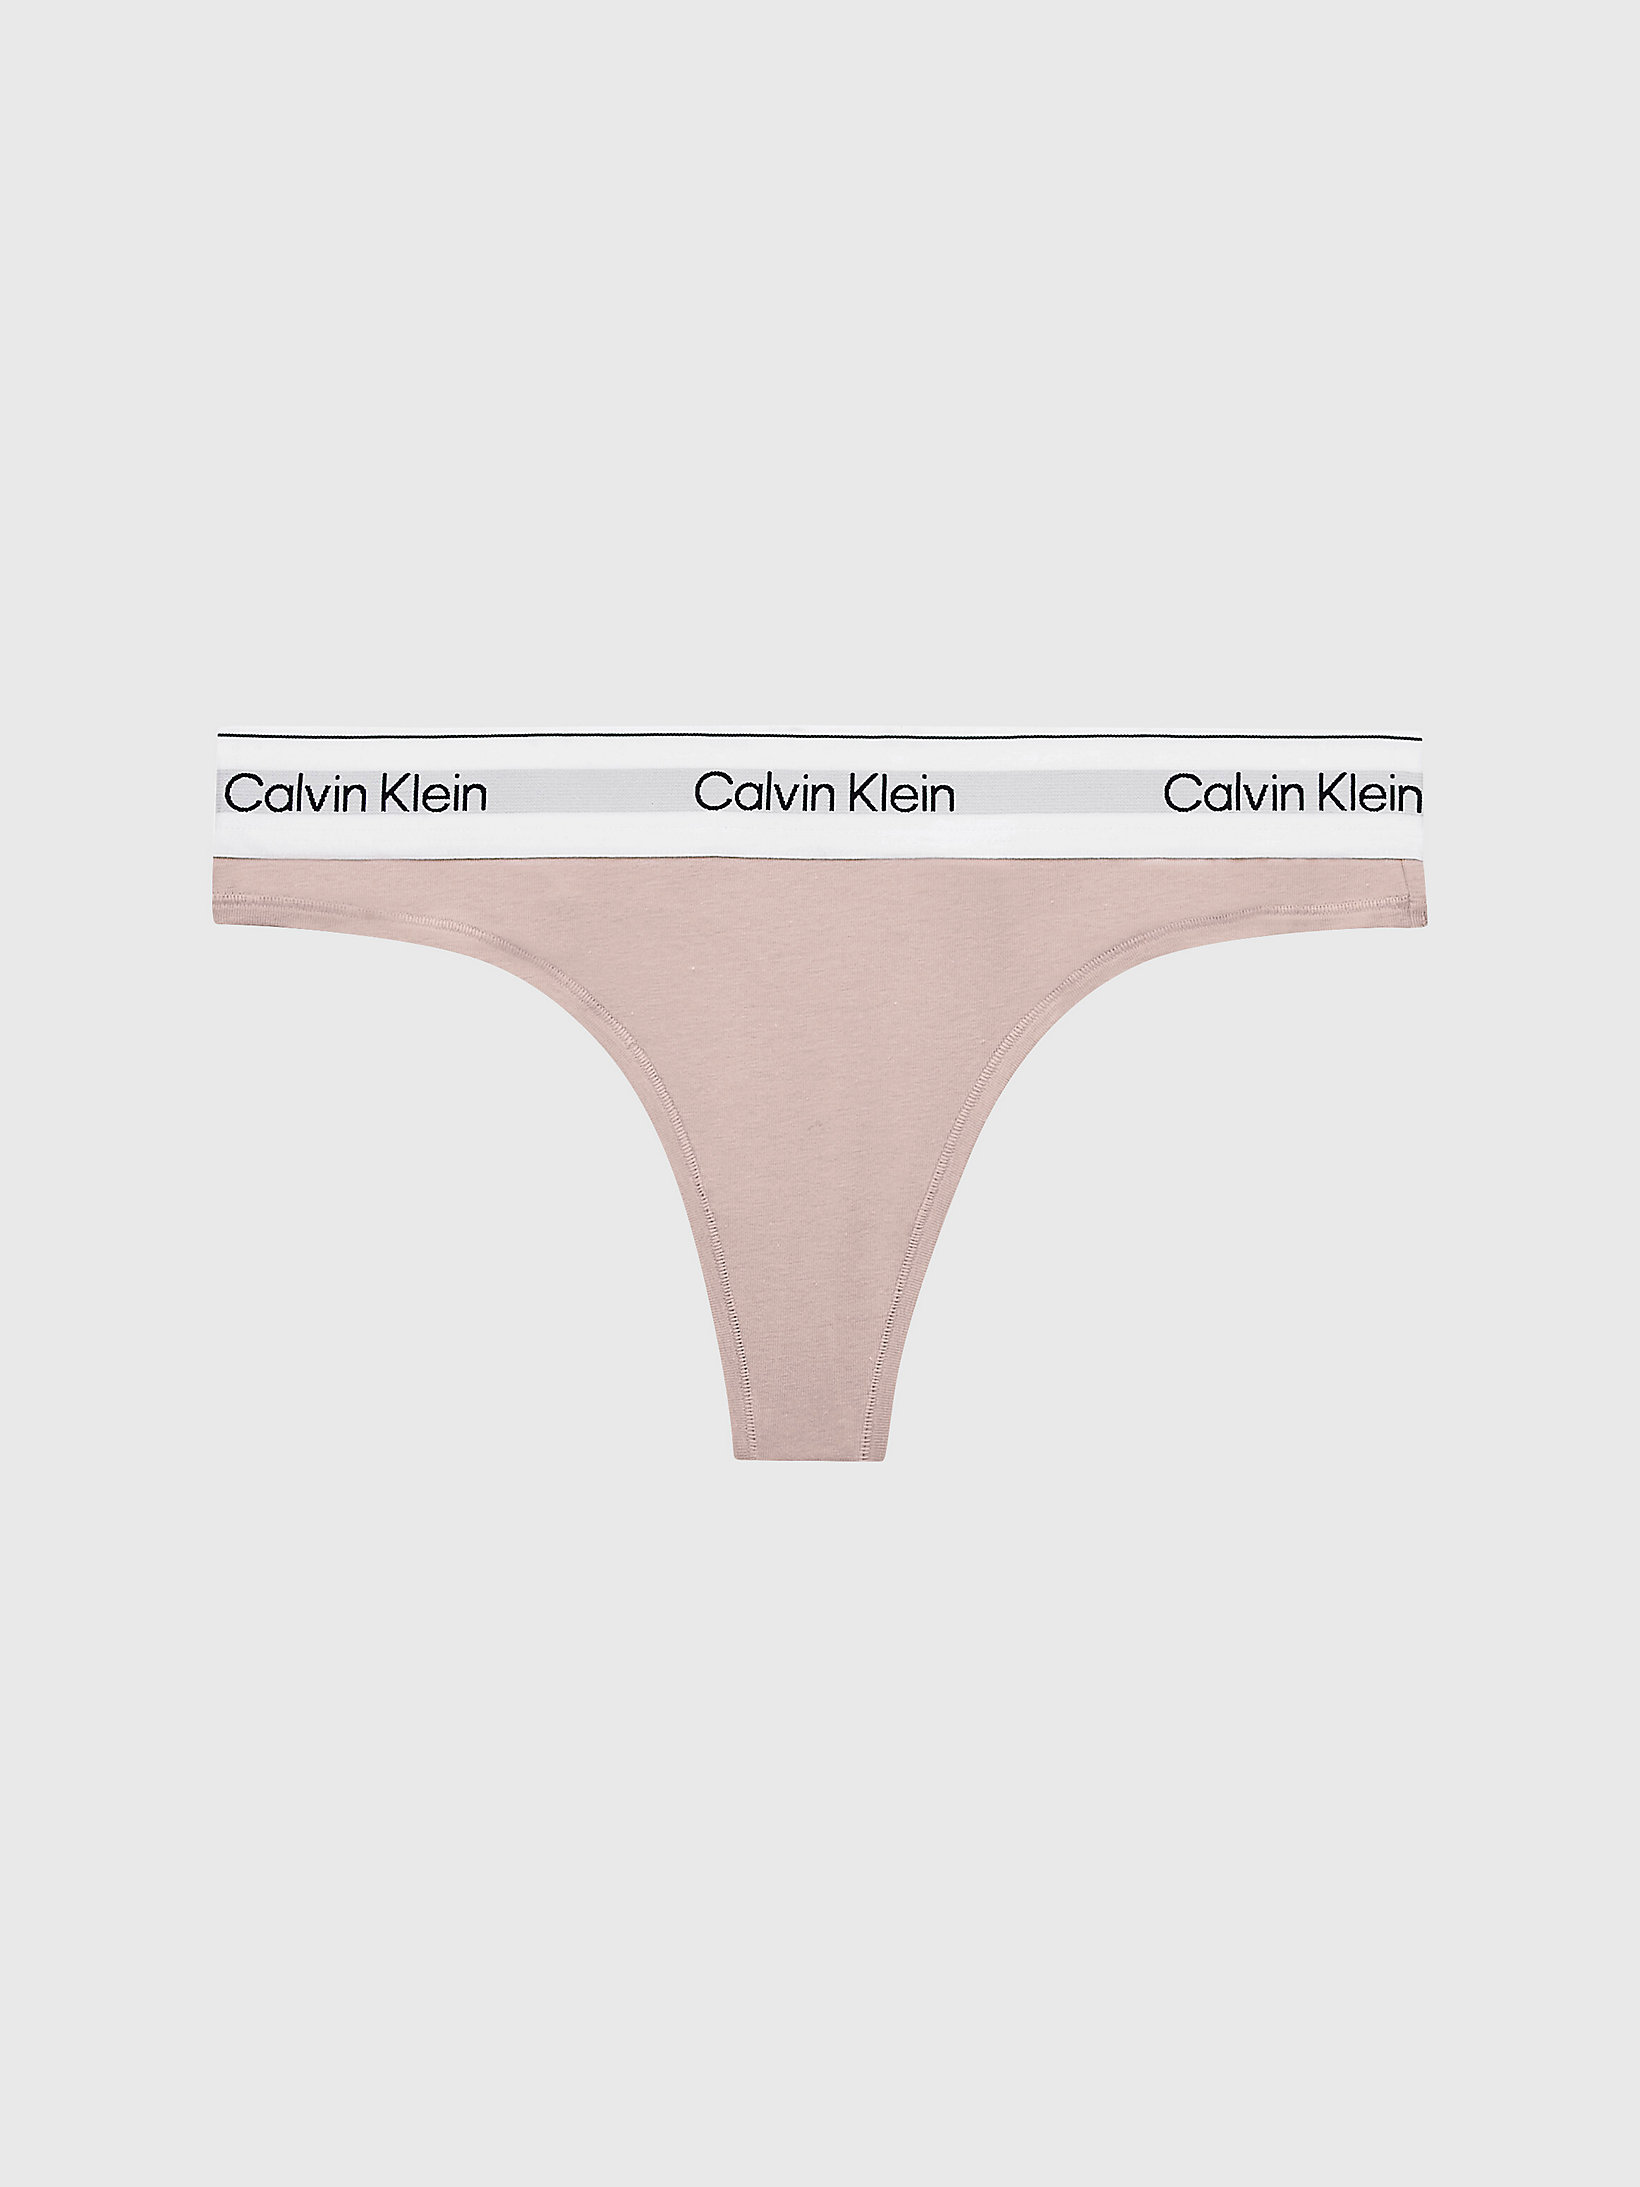 String - Modern Cotton > Cedar > undefined femmes > Calvin Klein